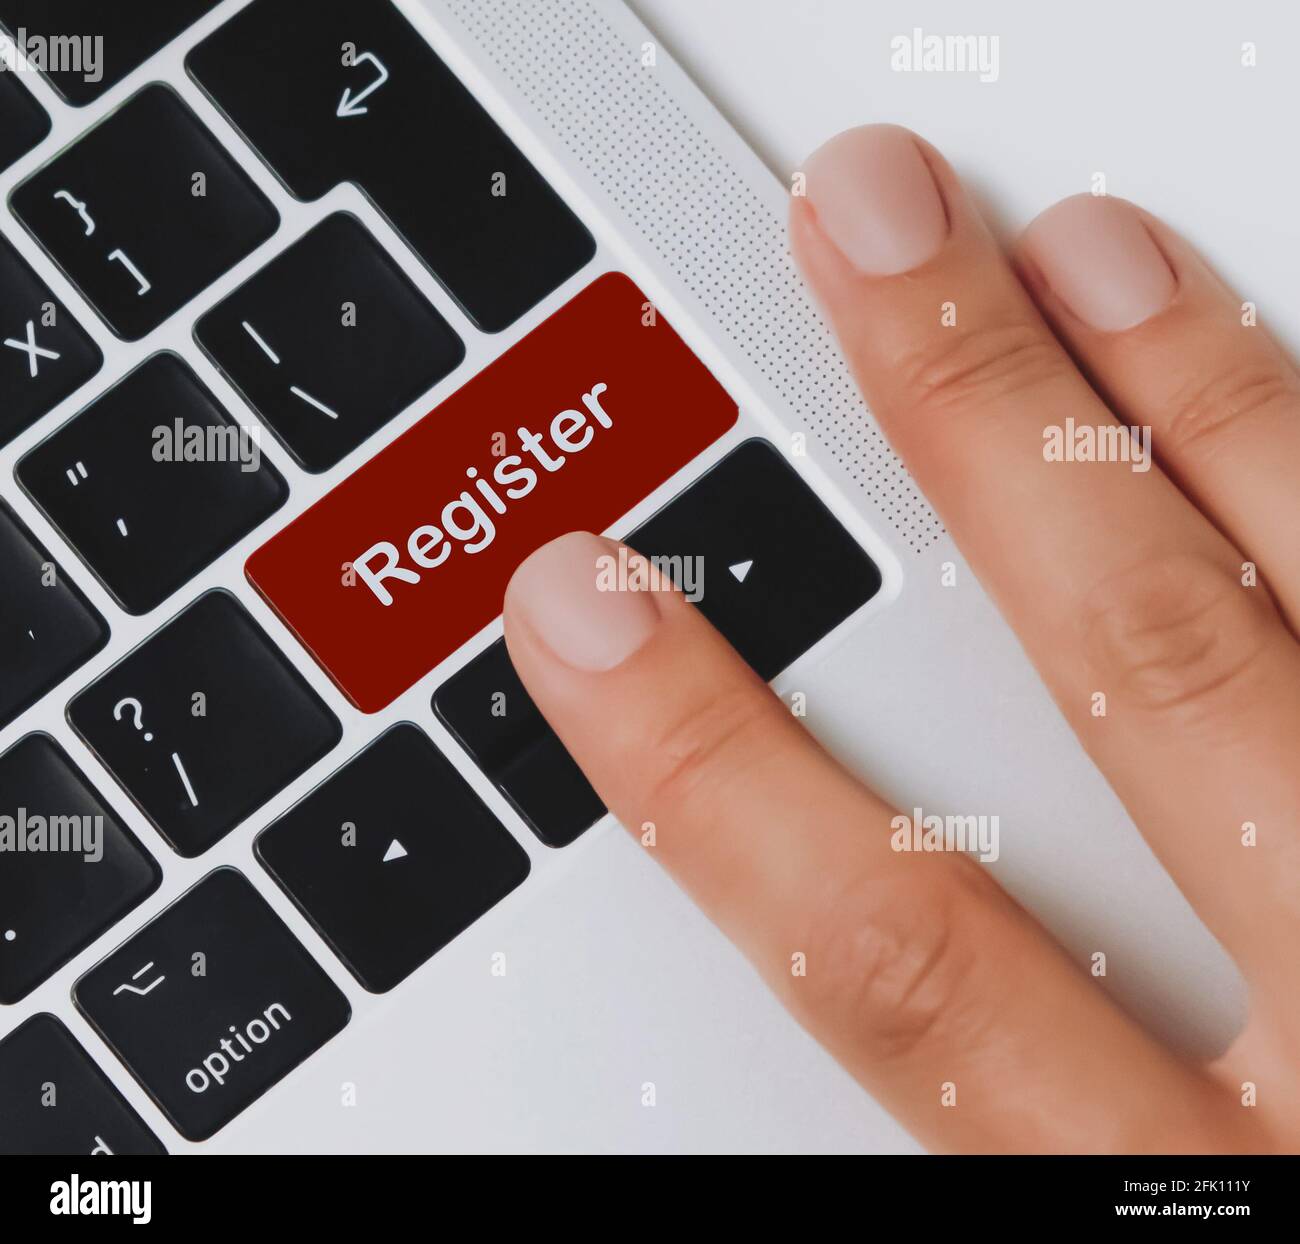 Le dita della persona che sta per premere il tasto 'Register' su una tastiera nera di un computer portatile su una scrivania dell'ufficio. Fare clic per registrarsi. Foto Stock